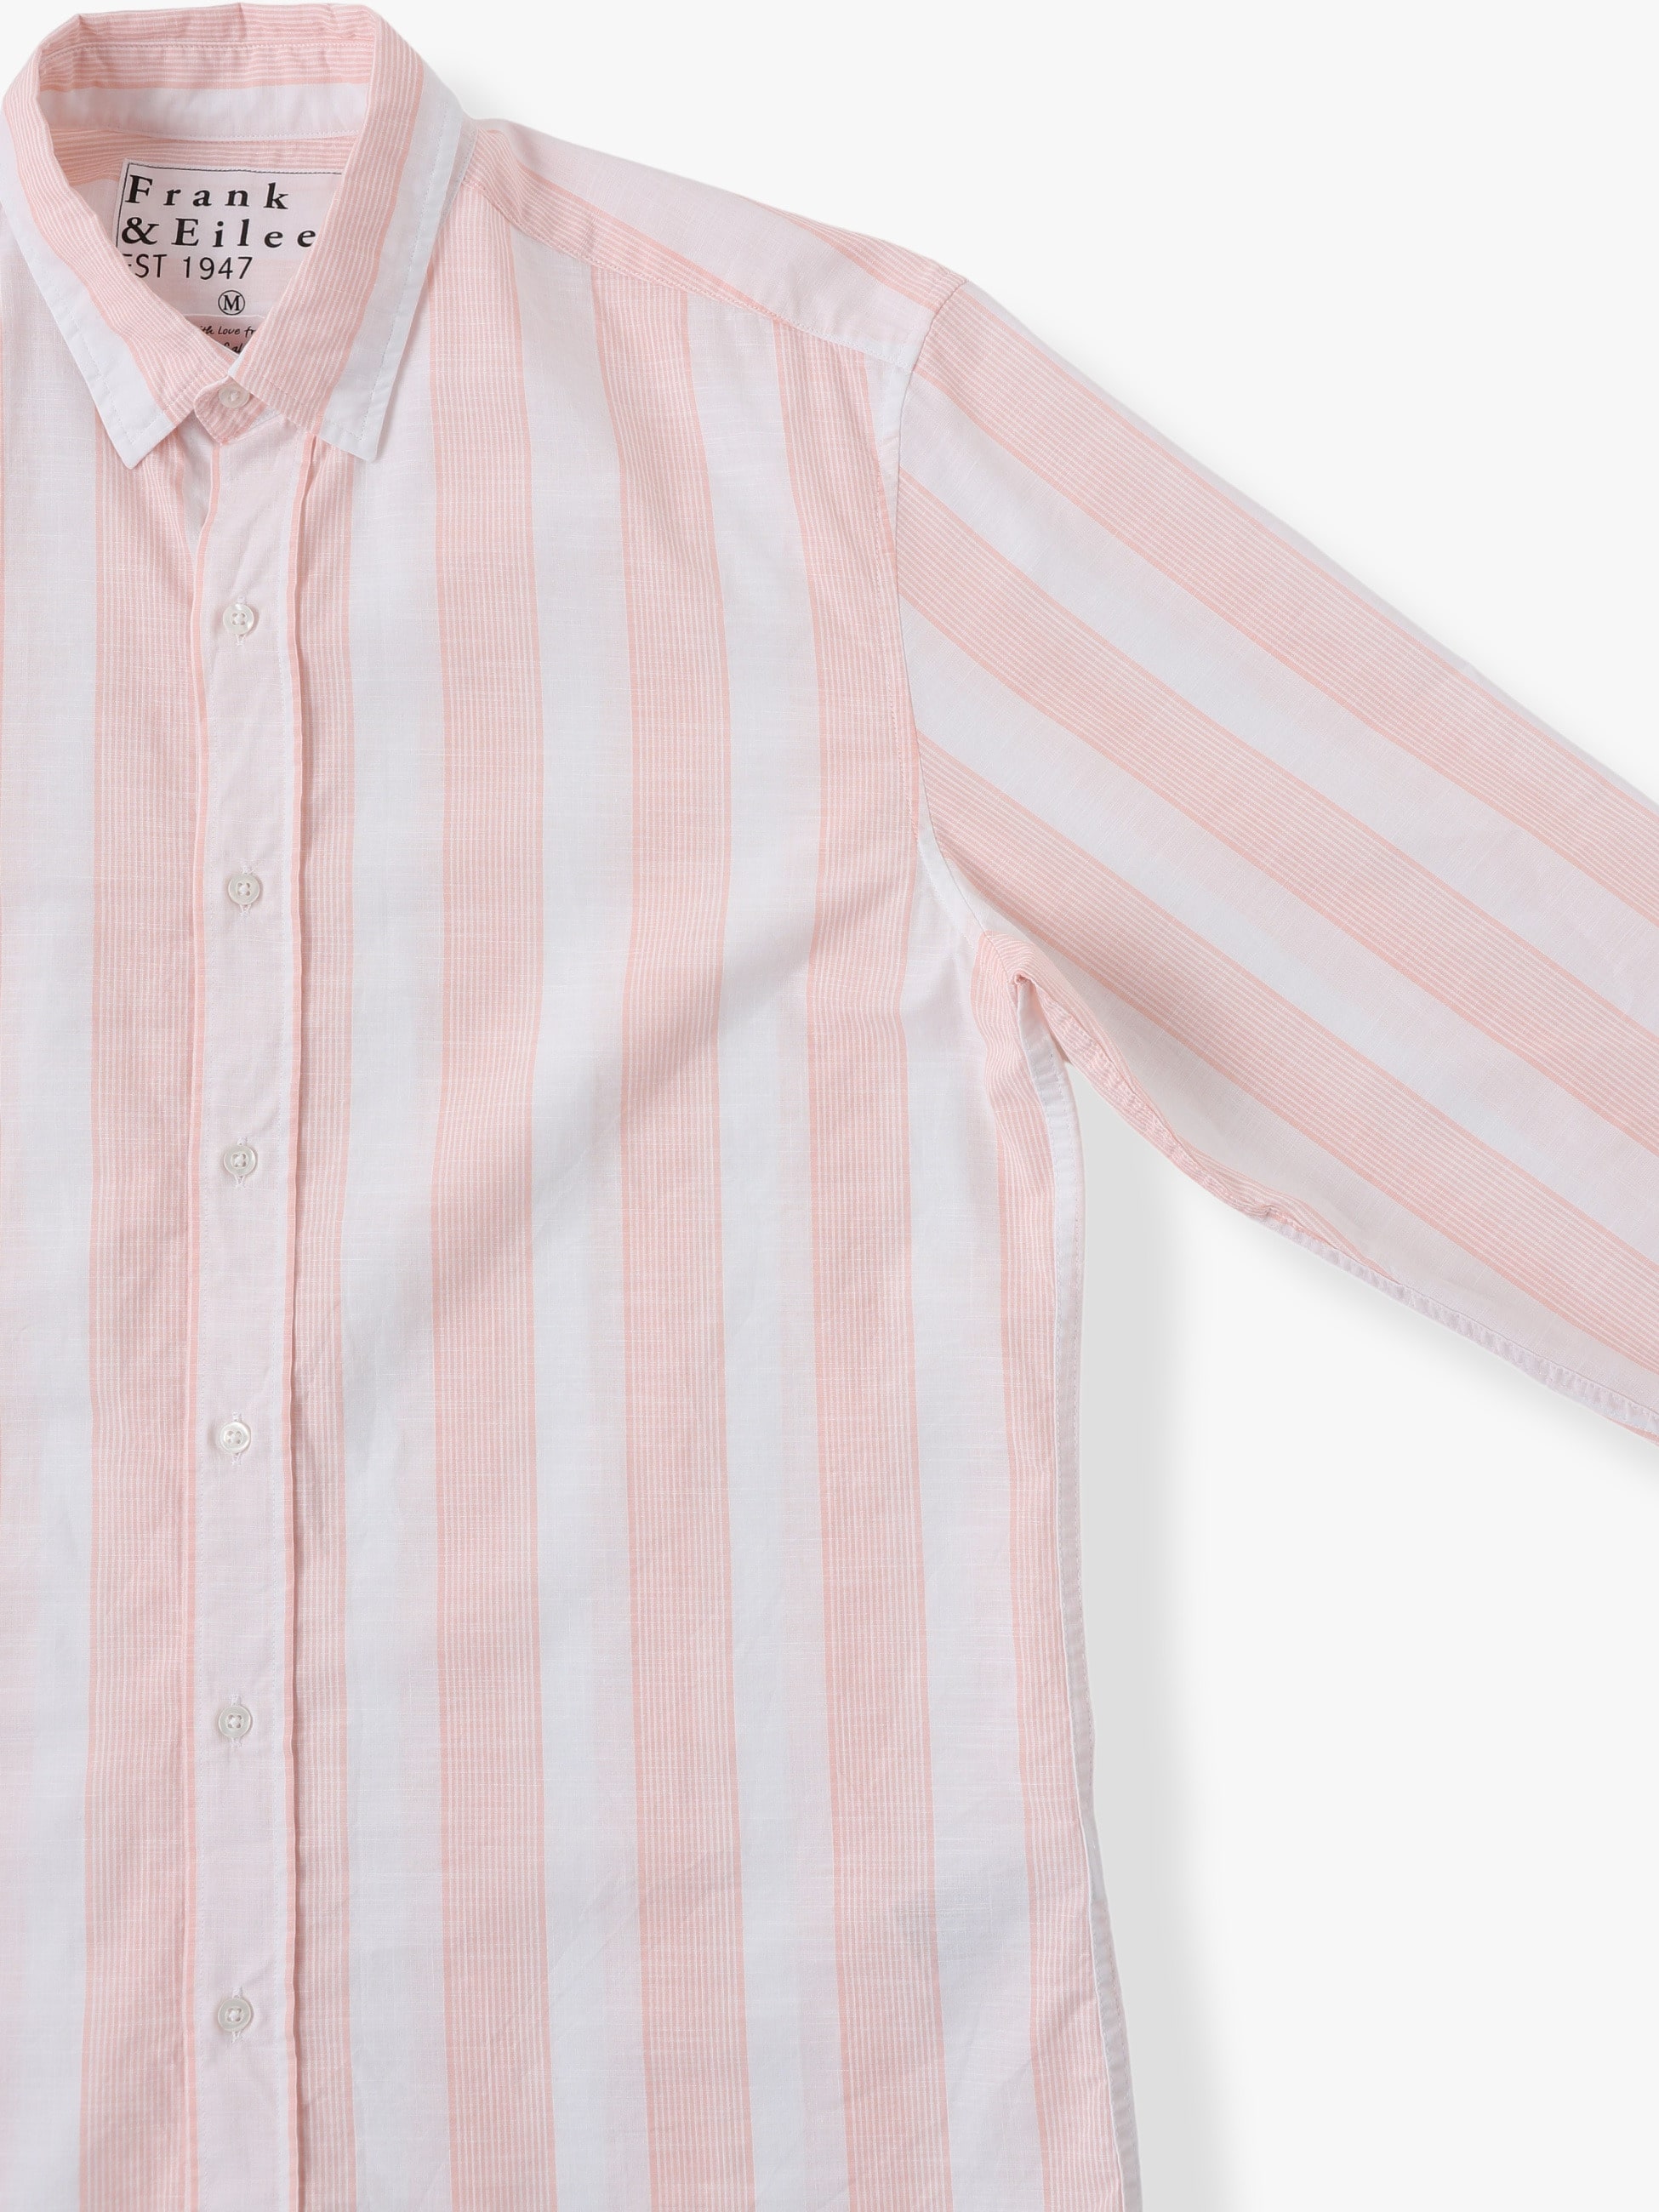 Finbar TWCB Shirt 詳細画像 light pink 2